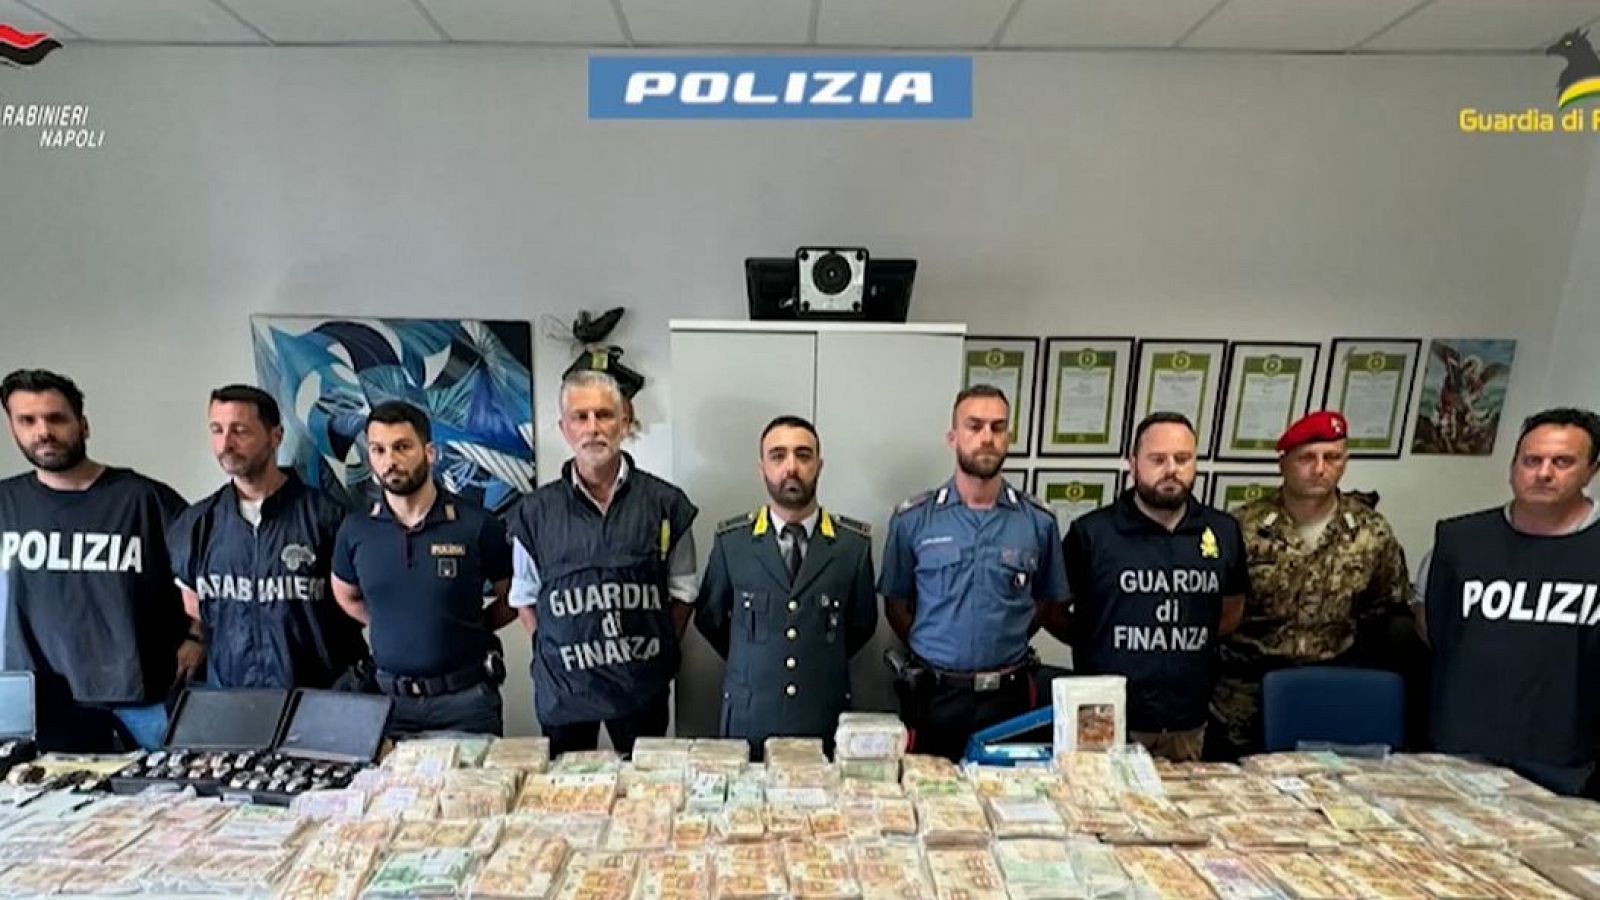 Encuentran el "tesoro" de un mafioso en Nápoles: 9 millones de euros en dinero y joyas